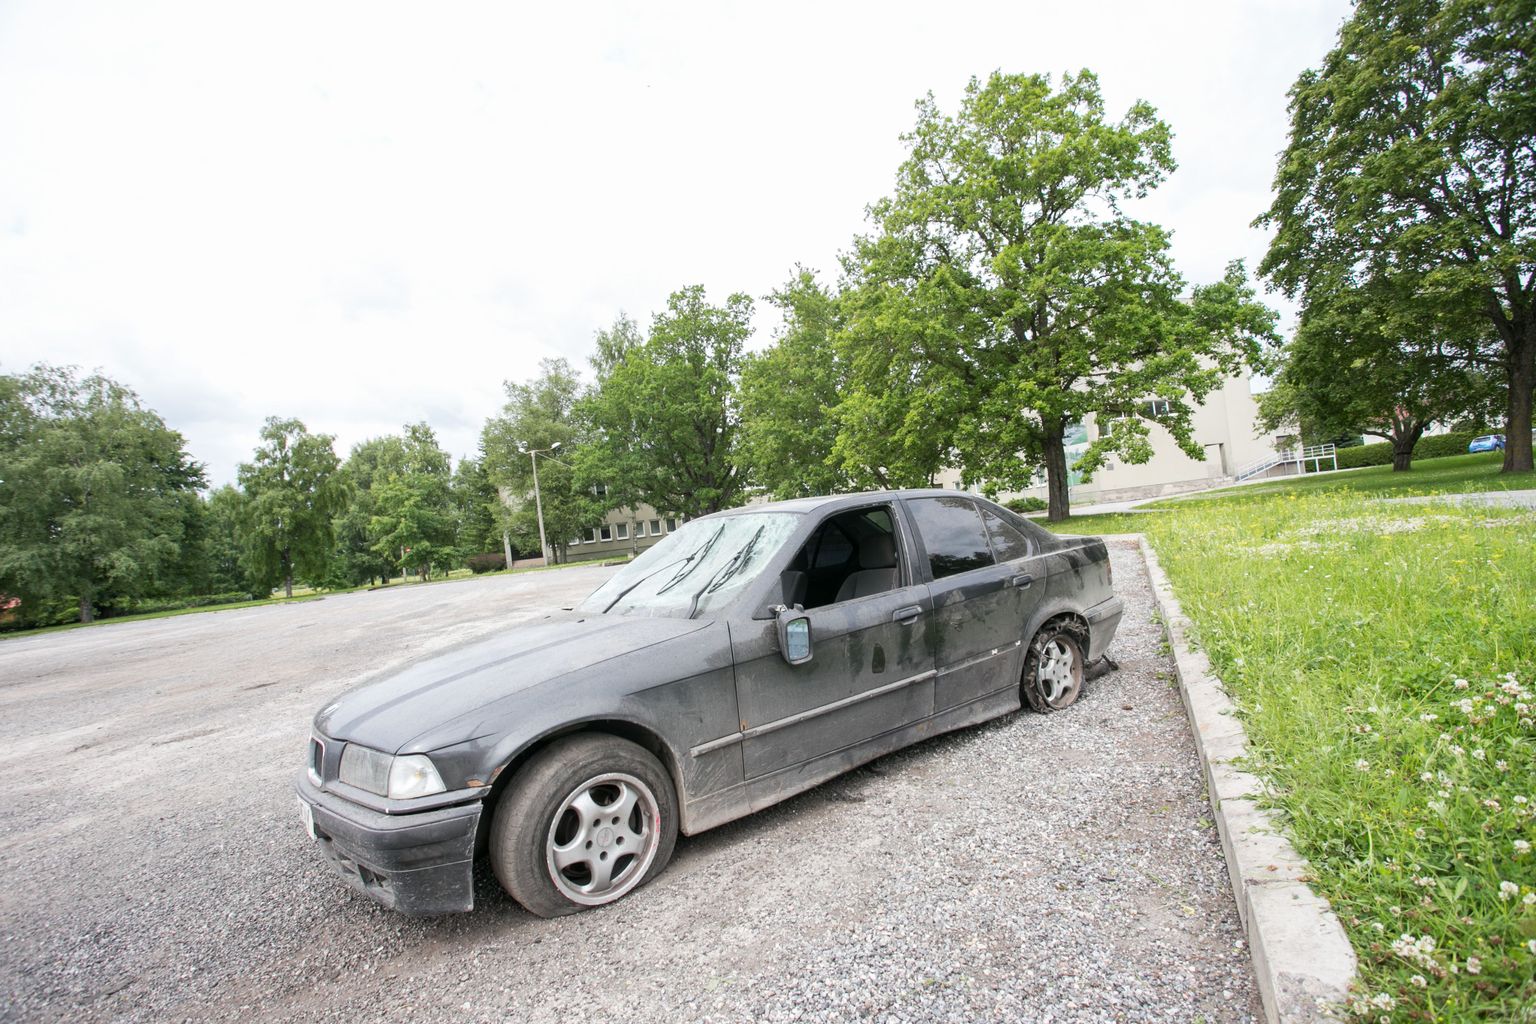 Kuivõrd sõiduki ostmine on võimalik ka interneti teel, võib hea tehingu asemel juhtuda, et auto on niivõrd kehvas seisus, et sellega ei ole võimalik isegi Eestisse sõita. Foto on illustreeriv.